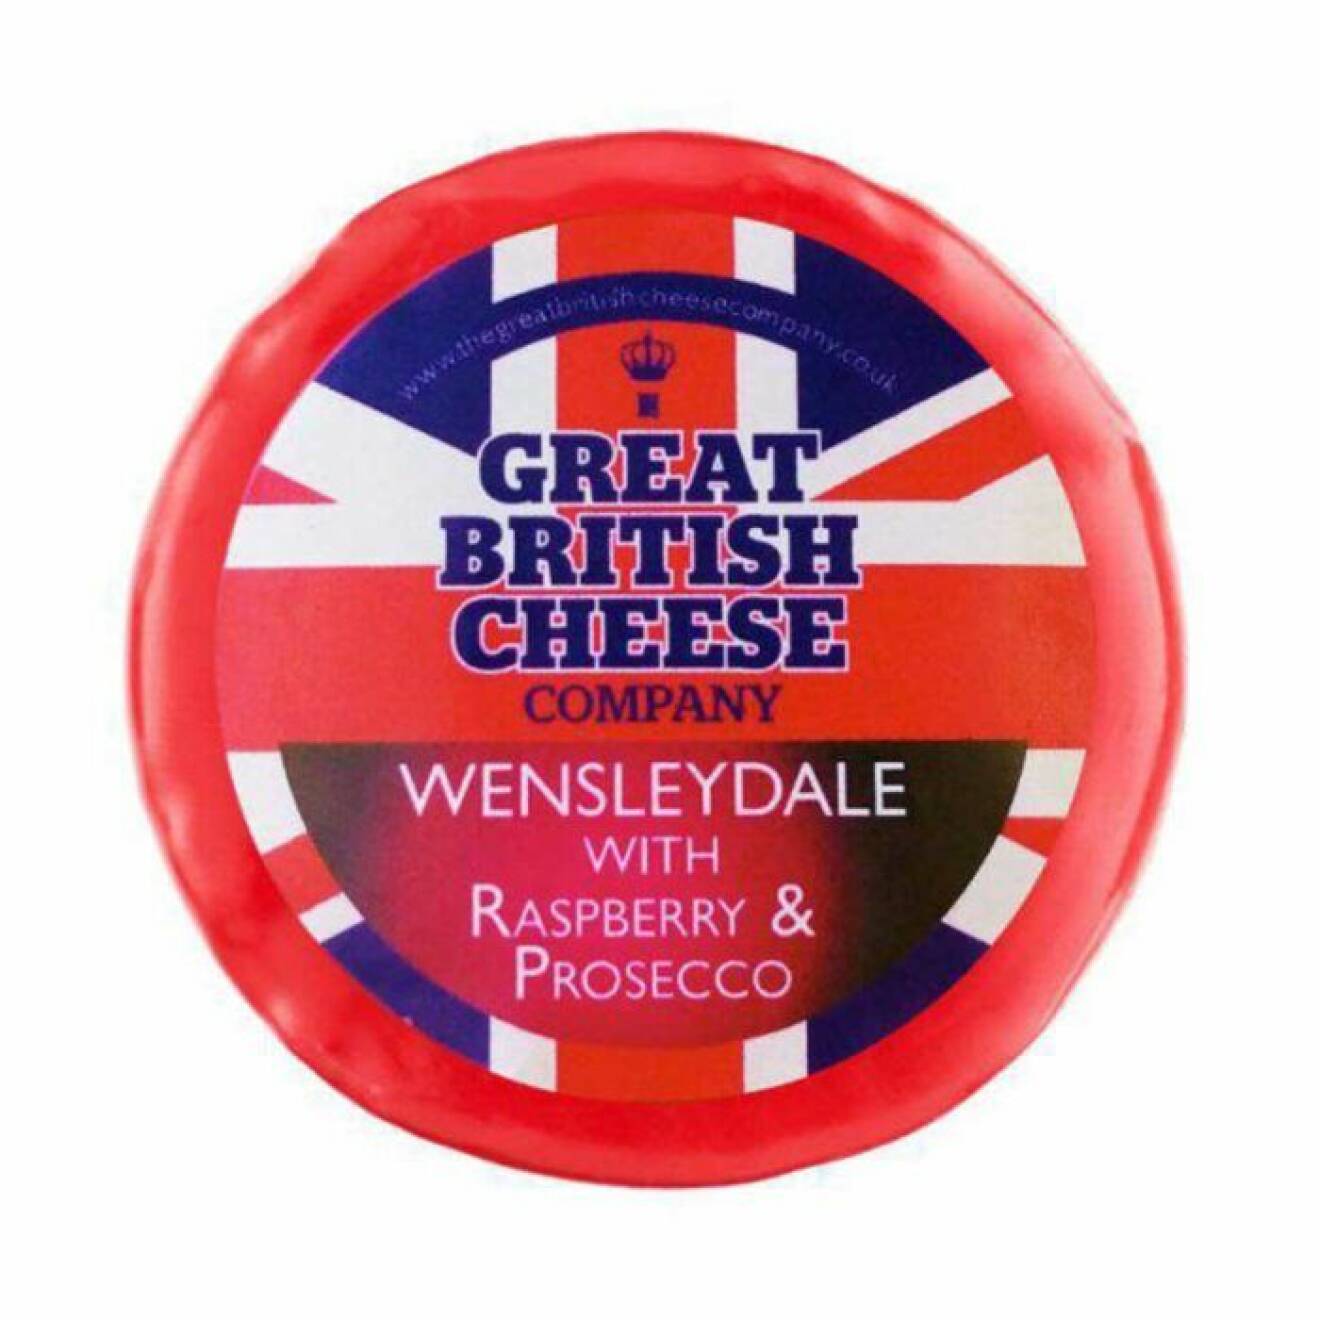 Osten tillverkas av The Great British Cheese Company. 